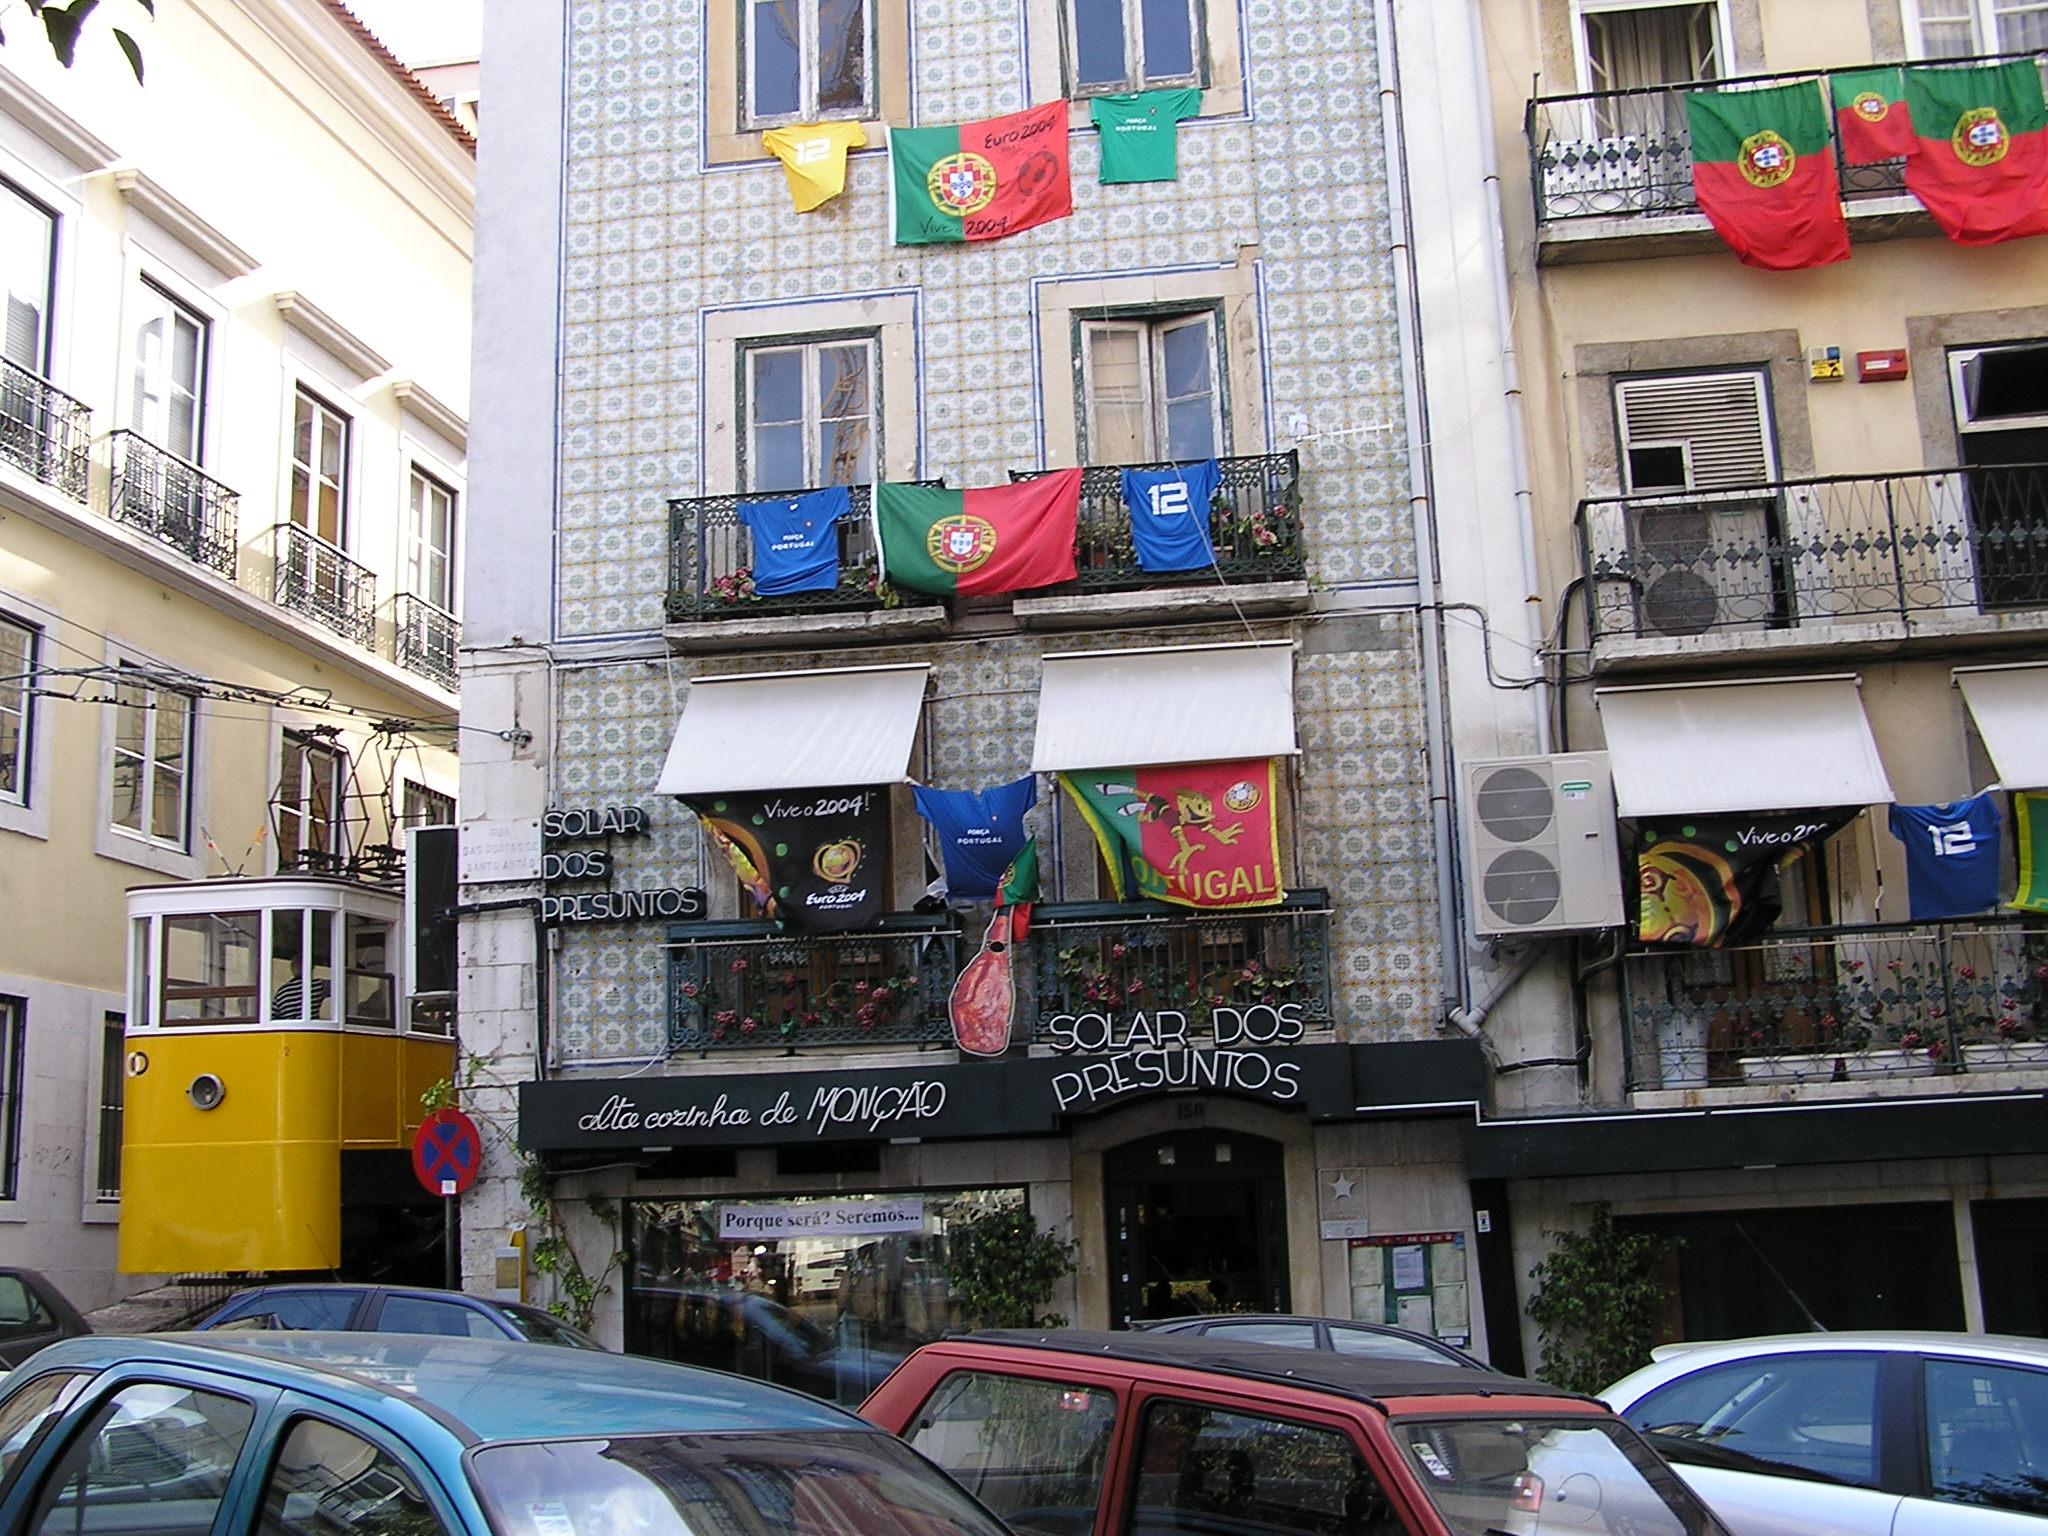 04 ヨーロッパ周遊の旅 Part1 ポルトガル編 ポルトガルの旅行記 ブログ By Ken02さん フォートラベル